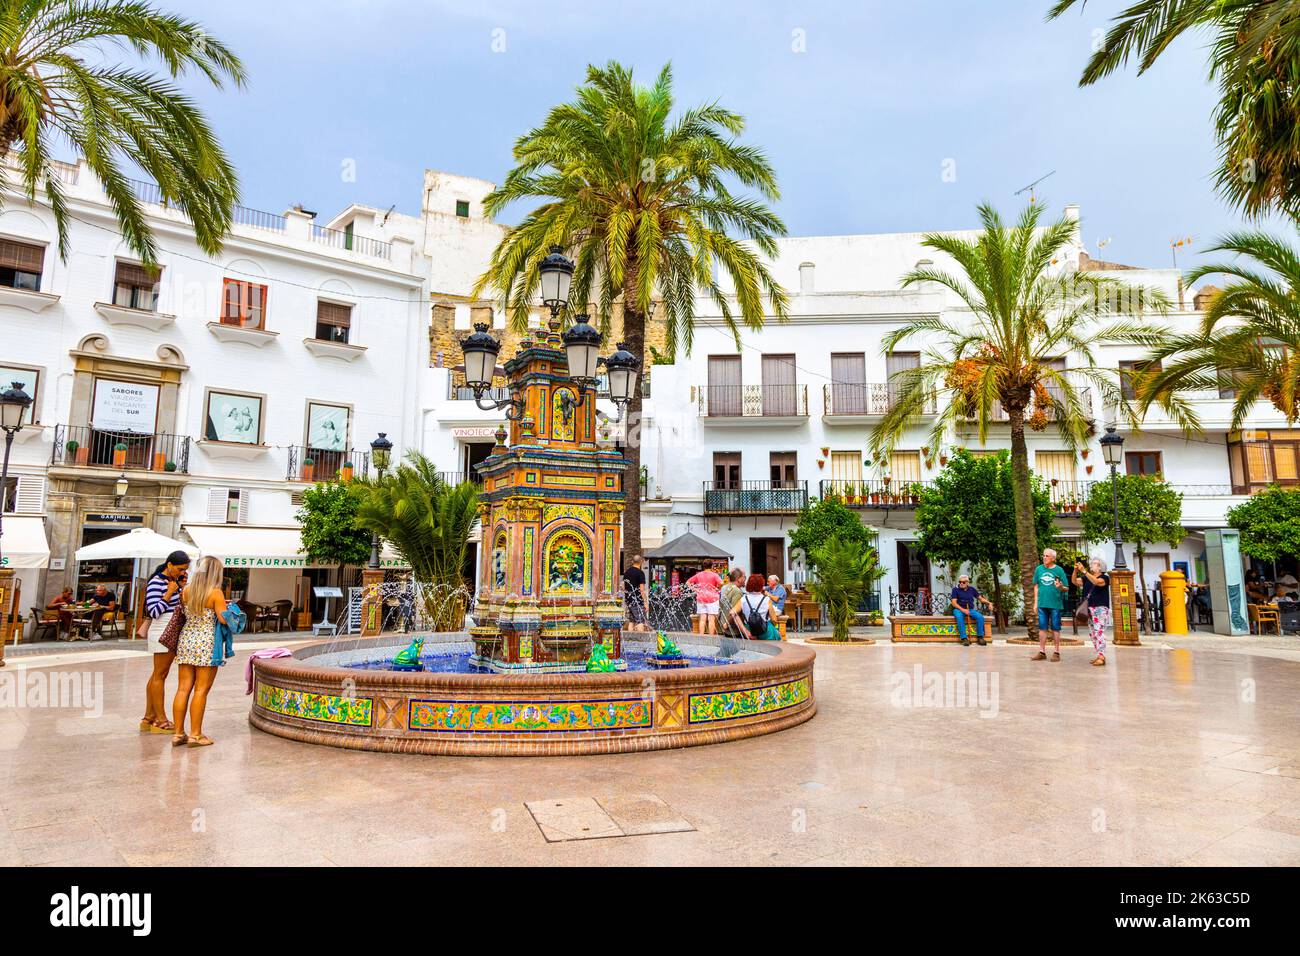 Colourful mosaic fountain at Plaza de Espana, Vejer de la Frontera, Andalusia, Spain Stock Photo